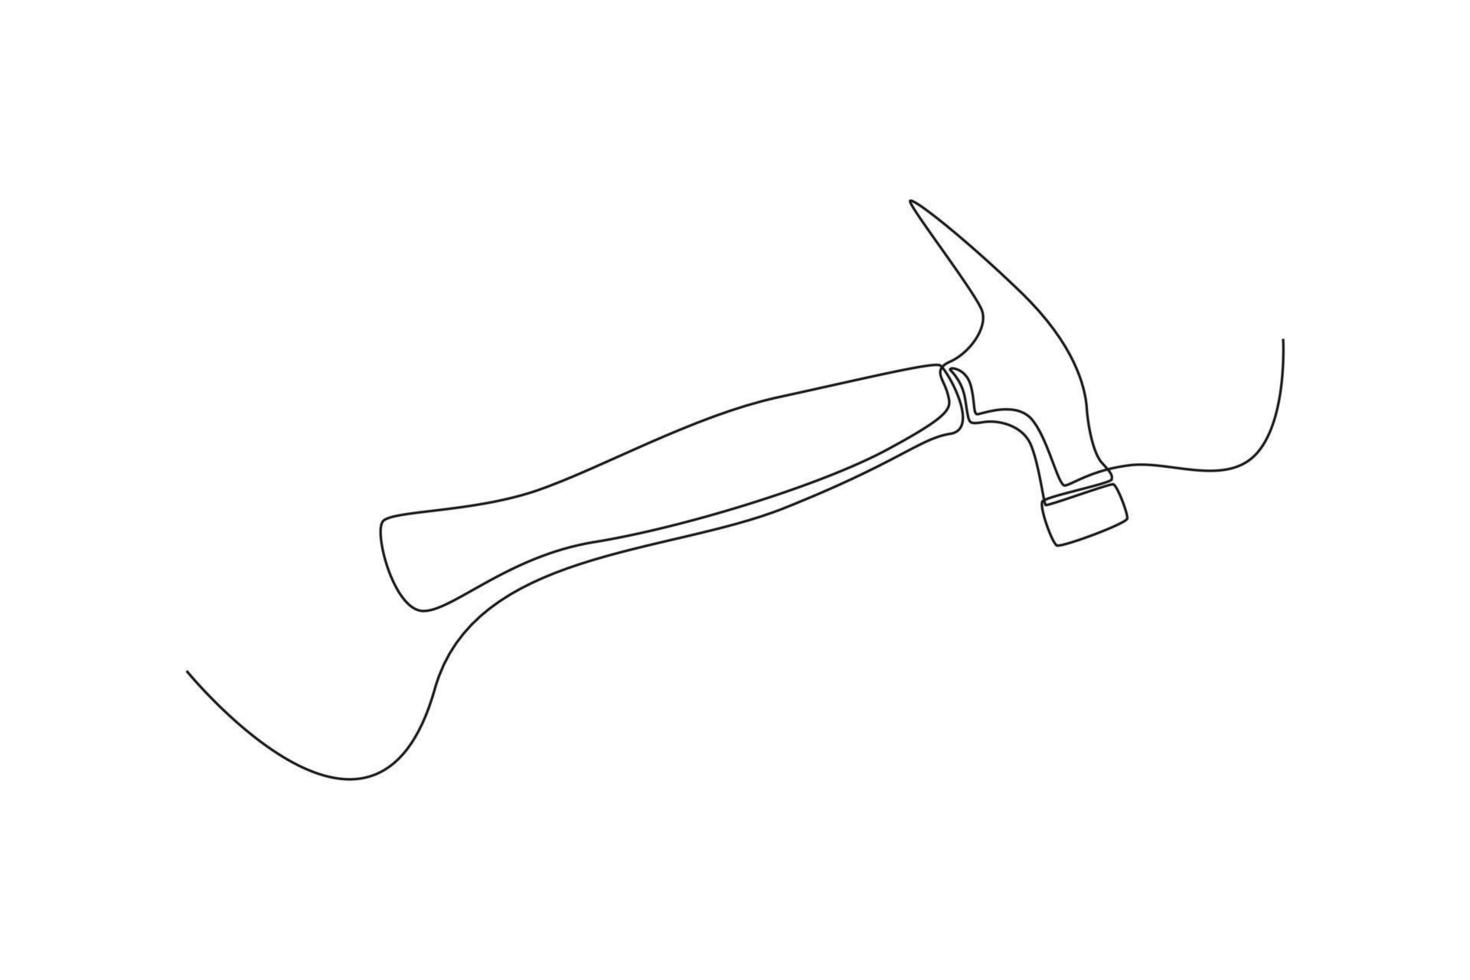 usos continuos de martillo de dibujo de una línea para golpear clavos. concepto de construcción y construcción. ilustración gráfica vectorial de diseño de dibujo de una sola línea. vector